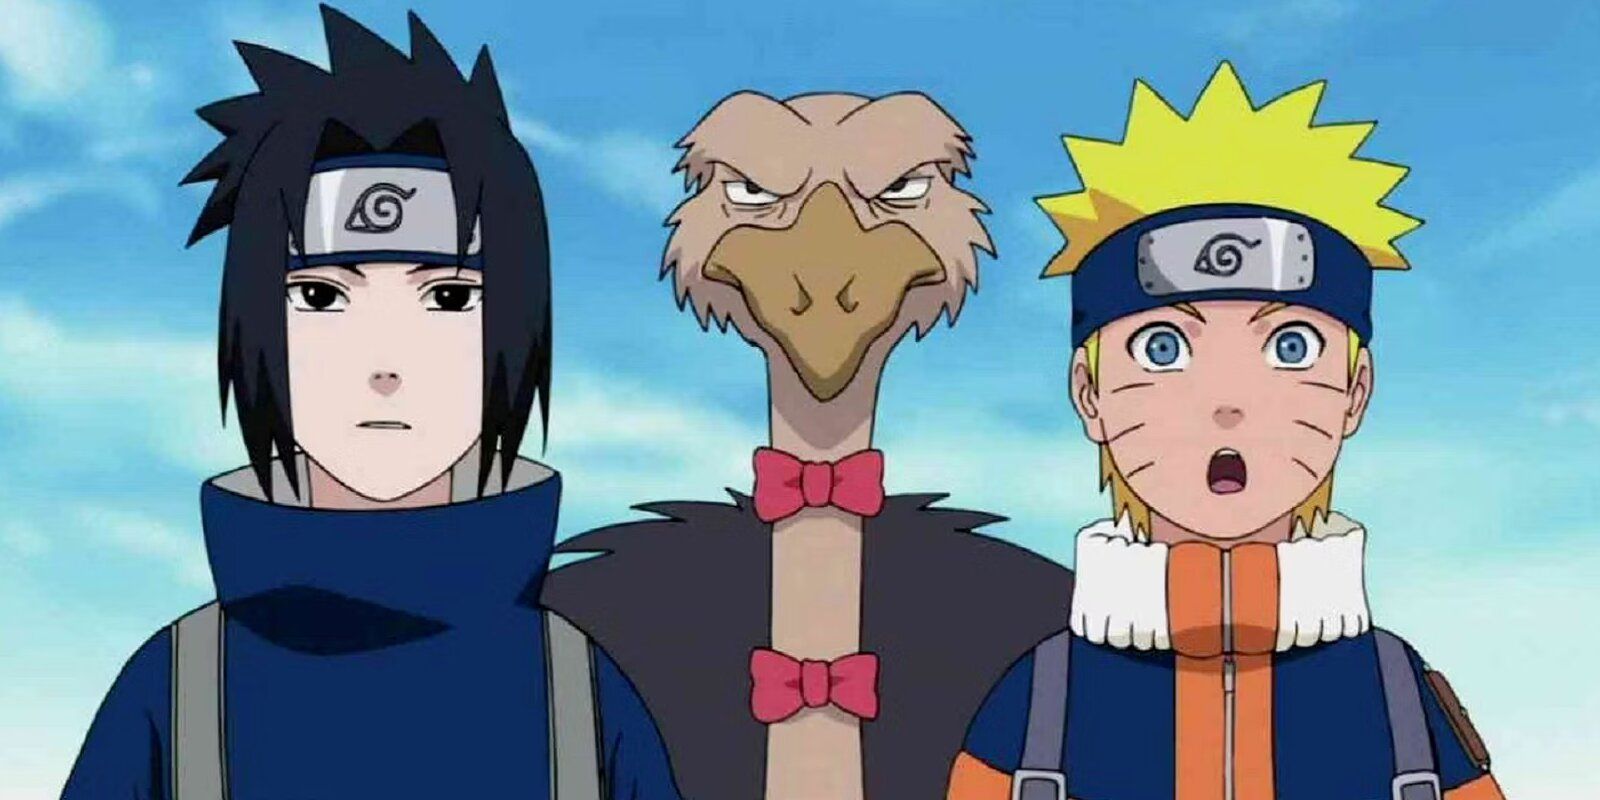 Naruto and Sasuke with a bird